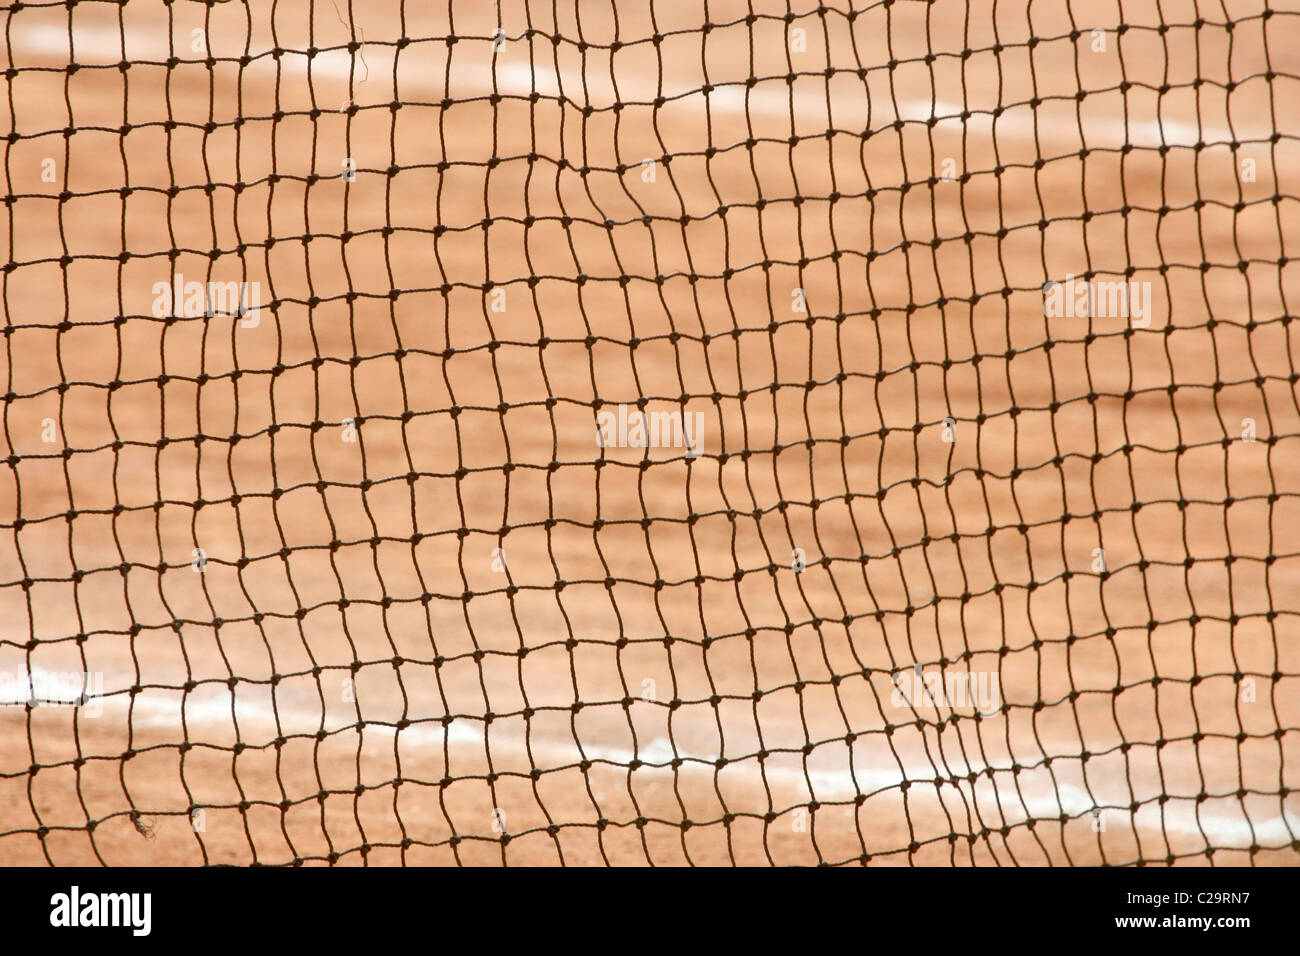 Filet de tennis sur une cour d'argile Banque D'Images